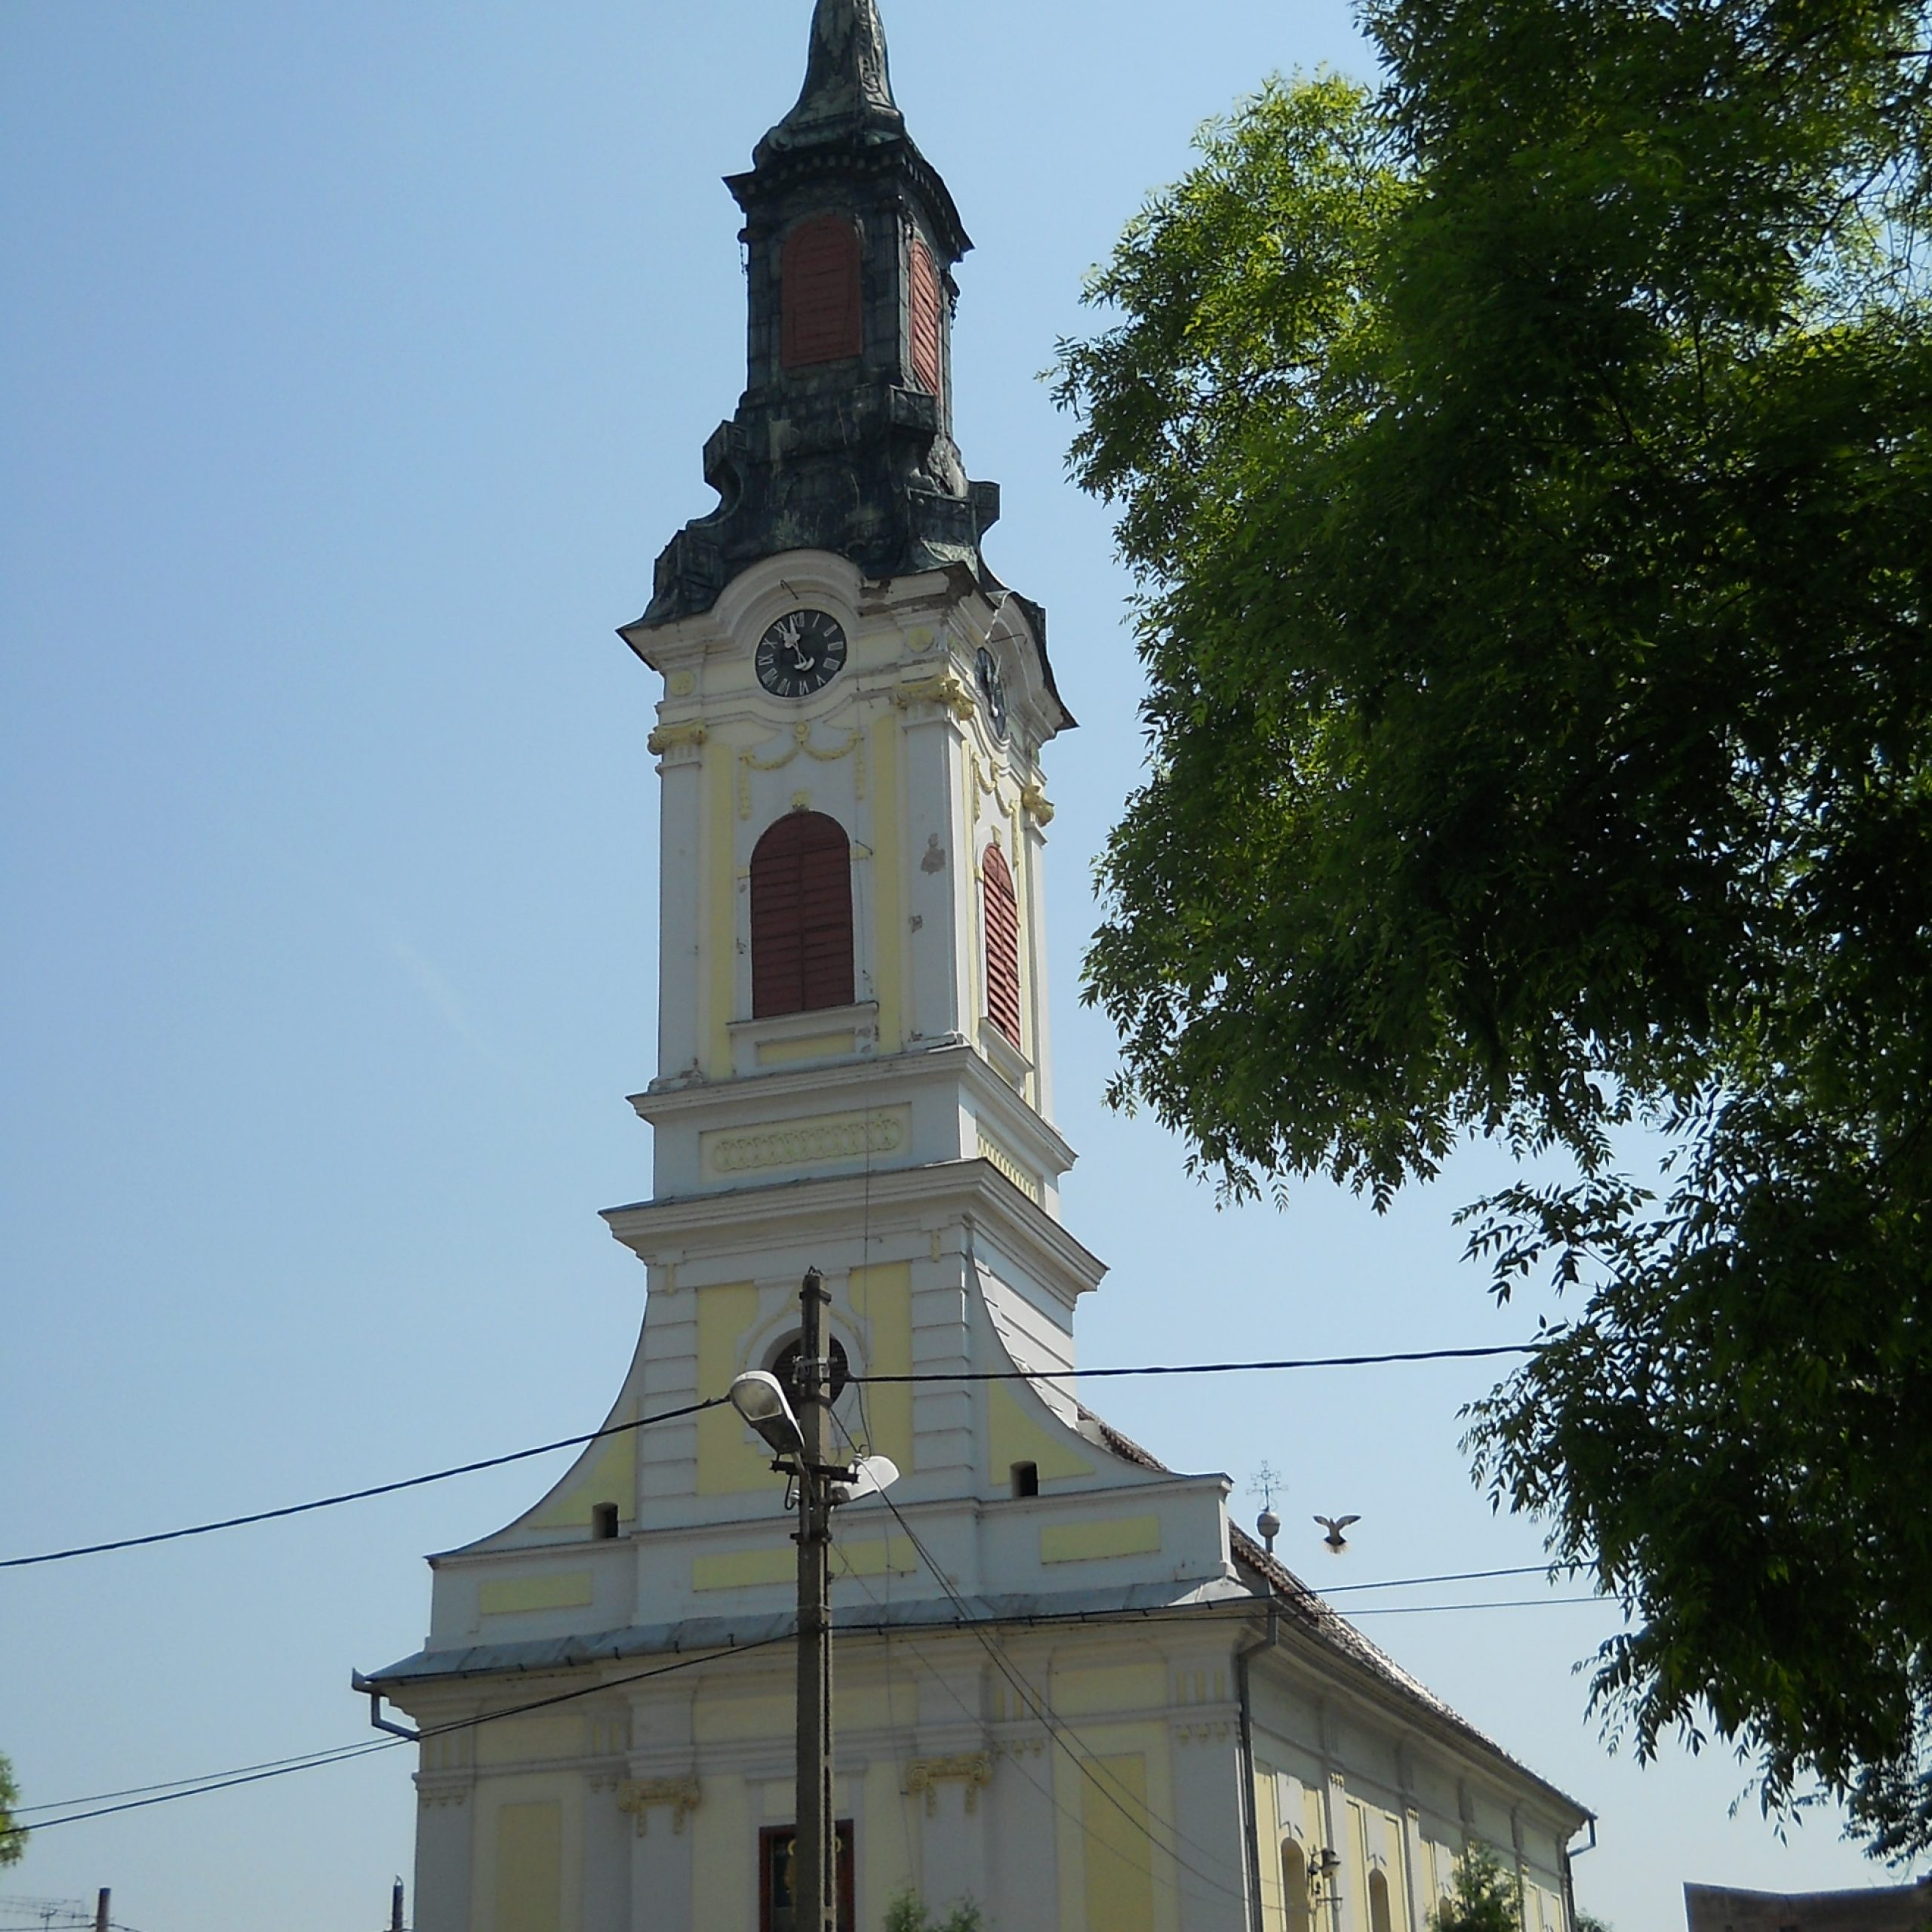 Explorați Biserica Sârbească din Arad, un monument istoric impresionant și un centru vital al comunității locale sârbe. Învățați despre rolul său în istoria Aradului.